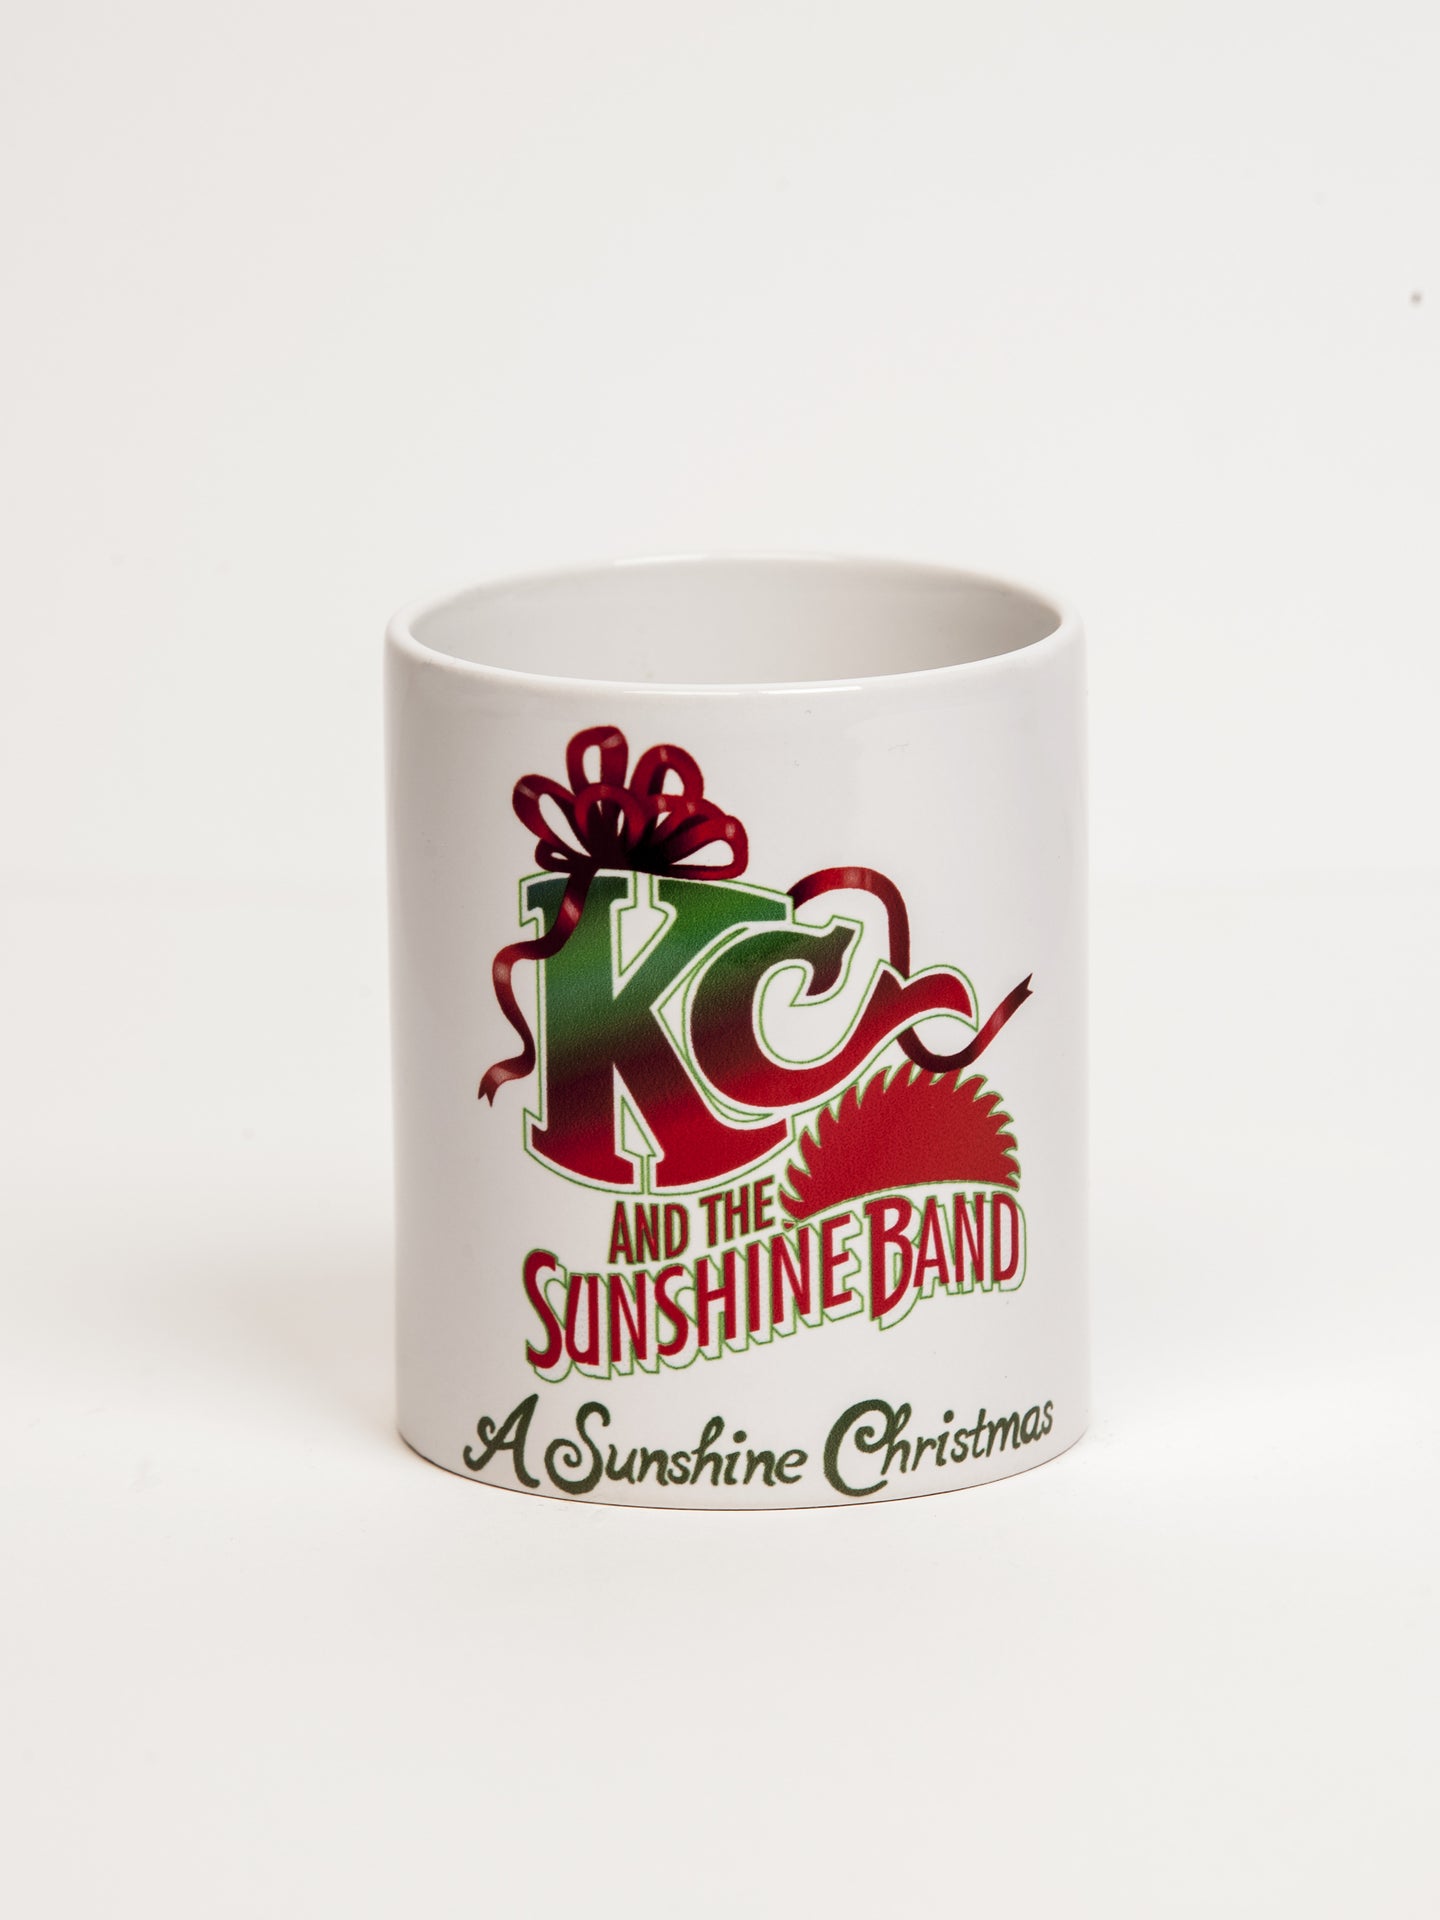 KCSB Christmas Mug